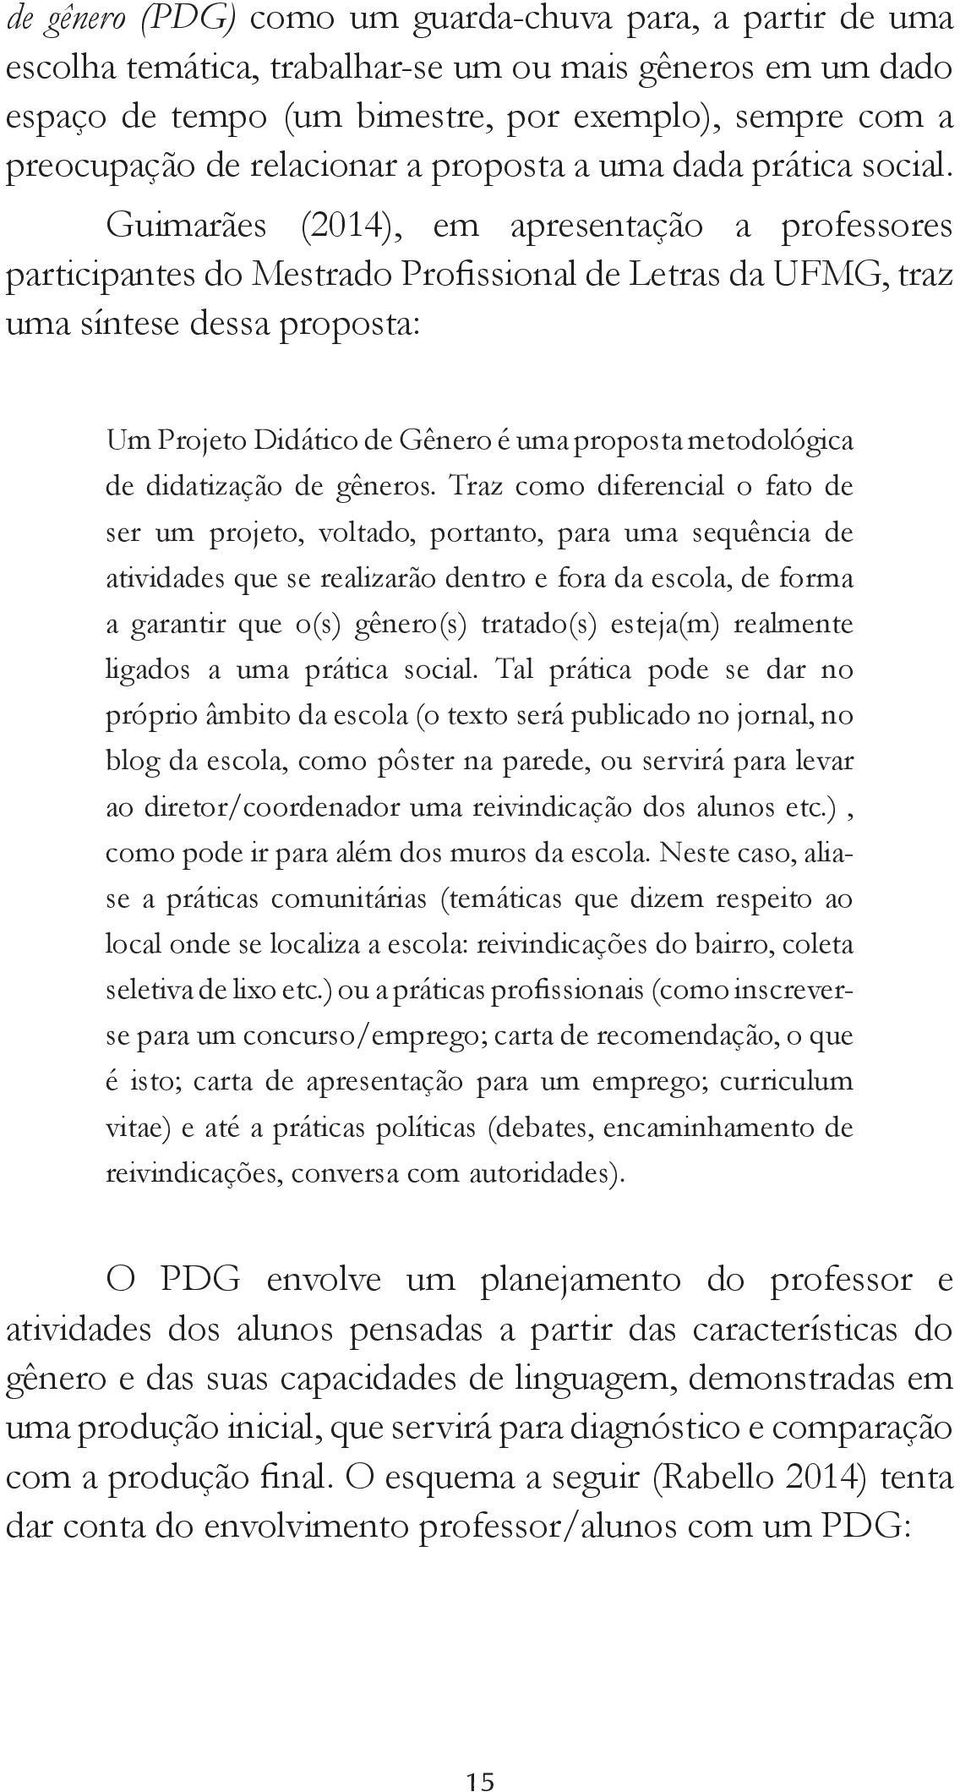 Guimarães (2014), em apresentação a professores participantes do Mestrado Profissional de Letras da UFMG, traz uma síntese dessa proposta: Um Projeto Didático de Gênero é uma proposta metodológica de